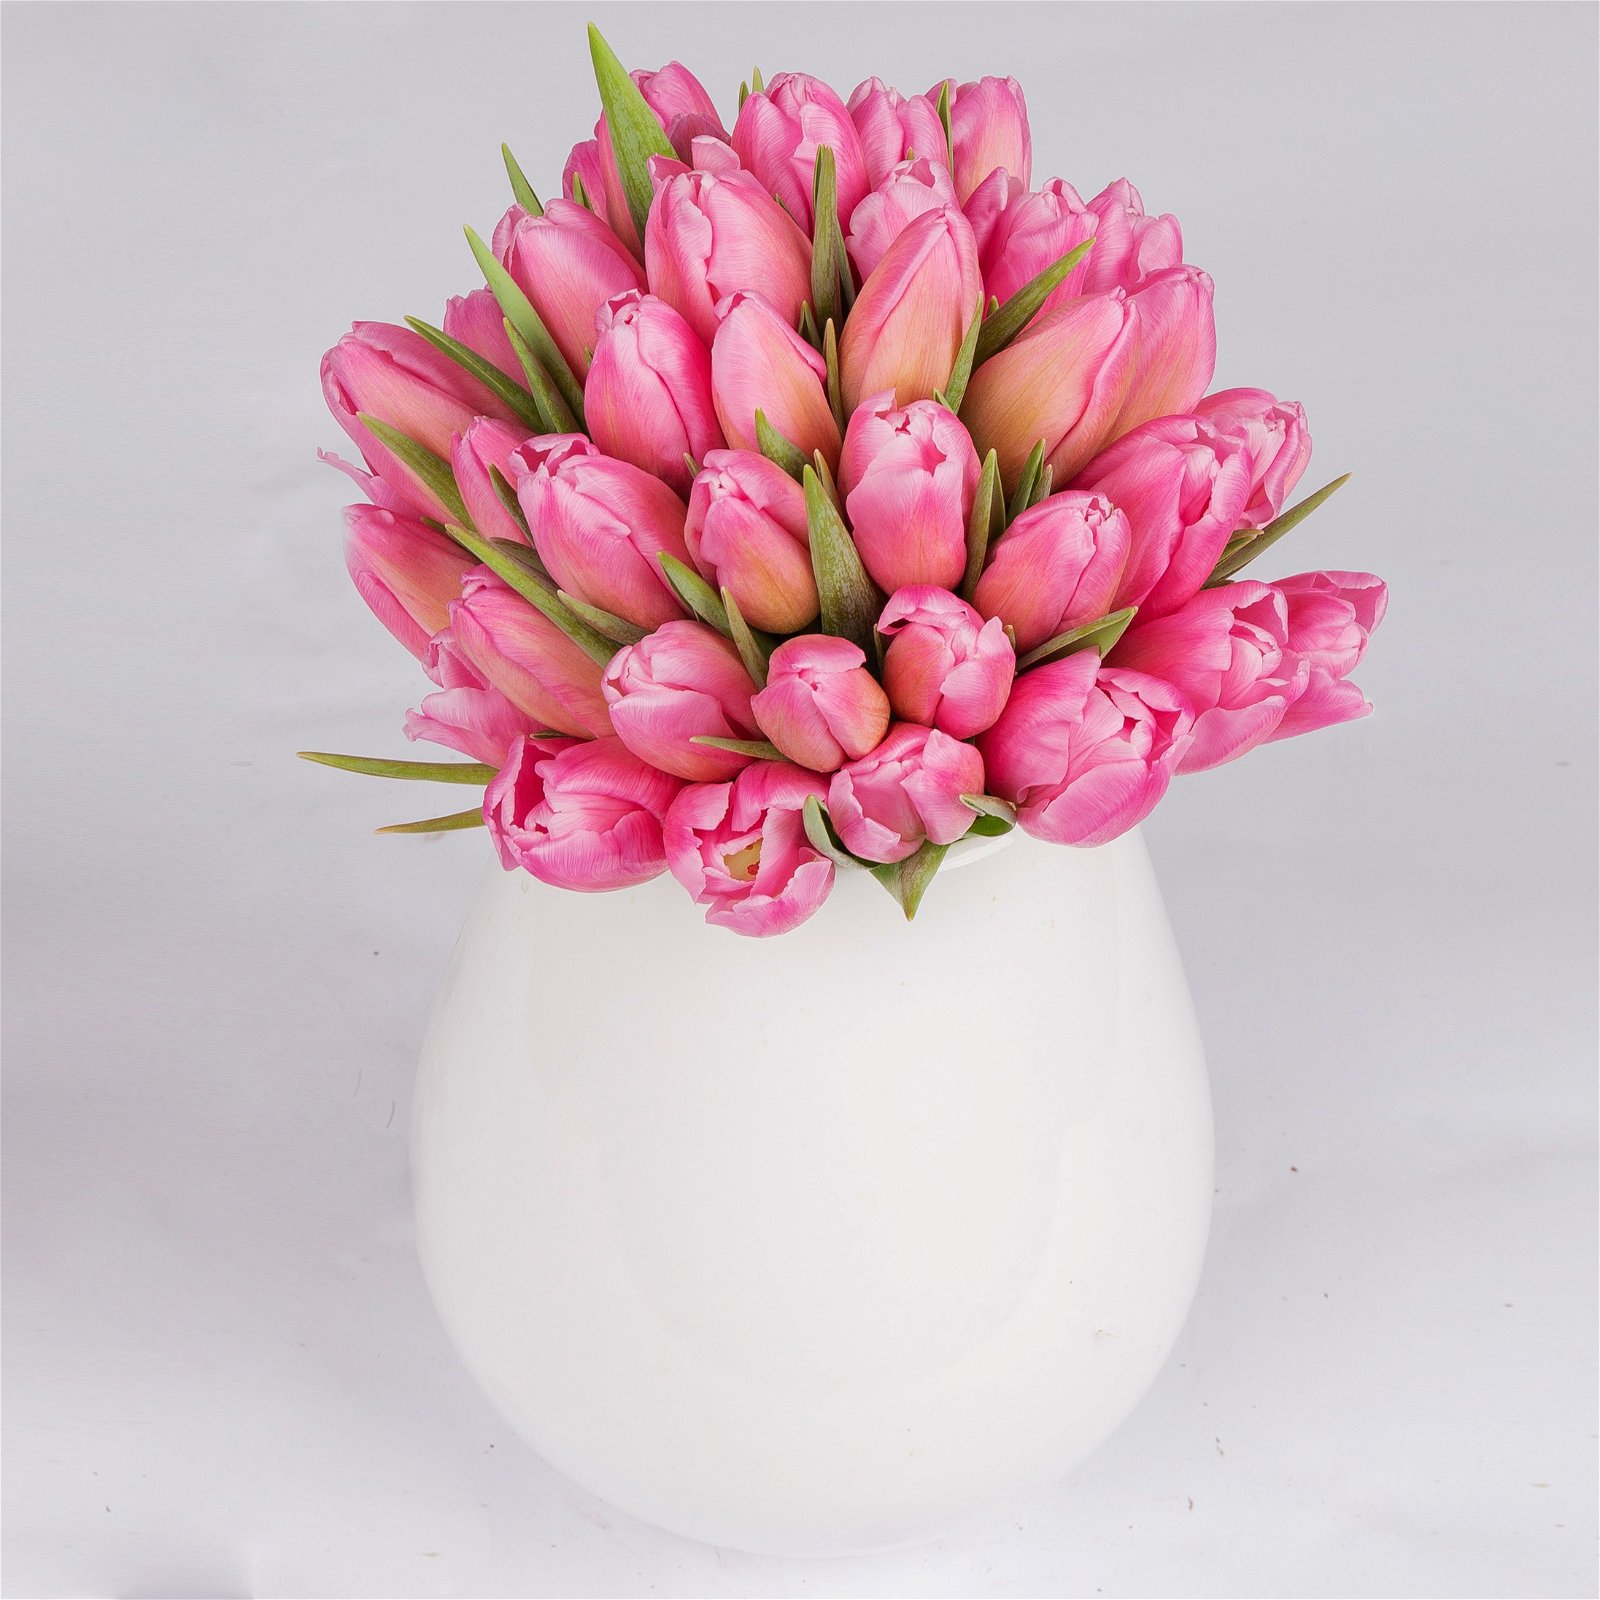 Blumenbund mit Tulpen, 50er-Bund, pink, inkl. gratis Grußkarte